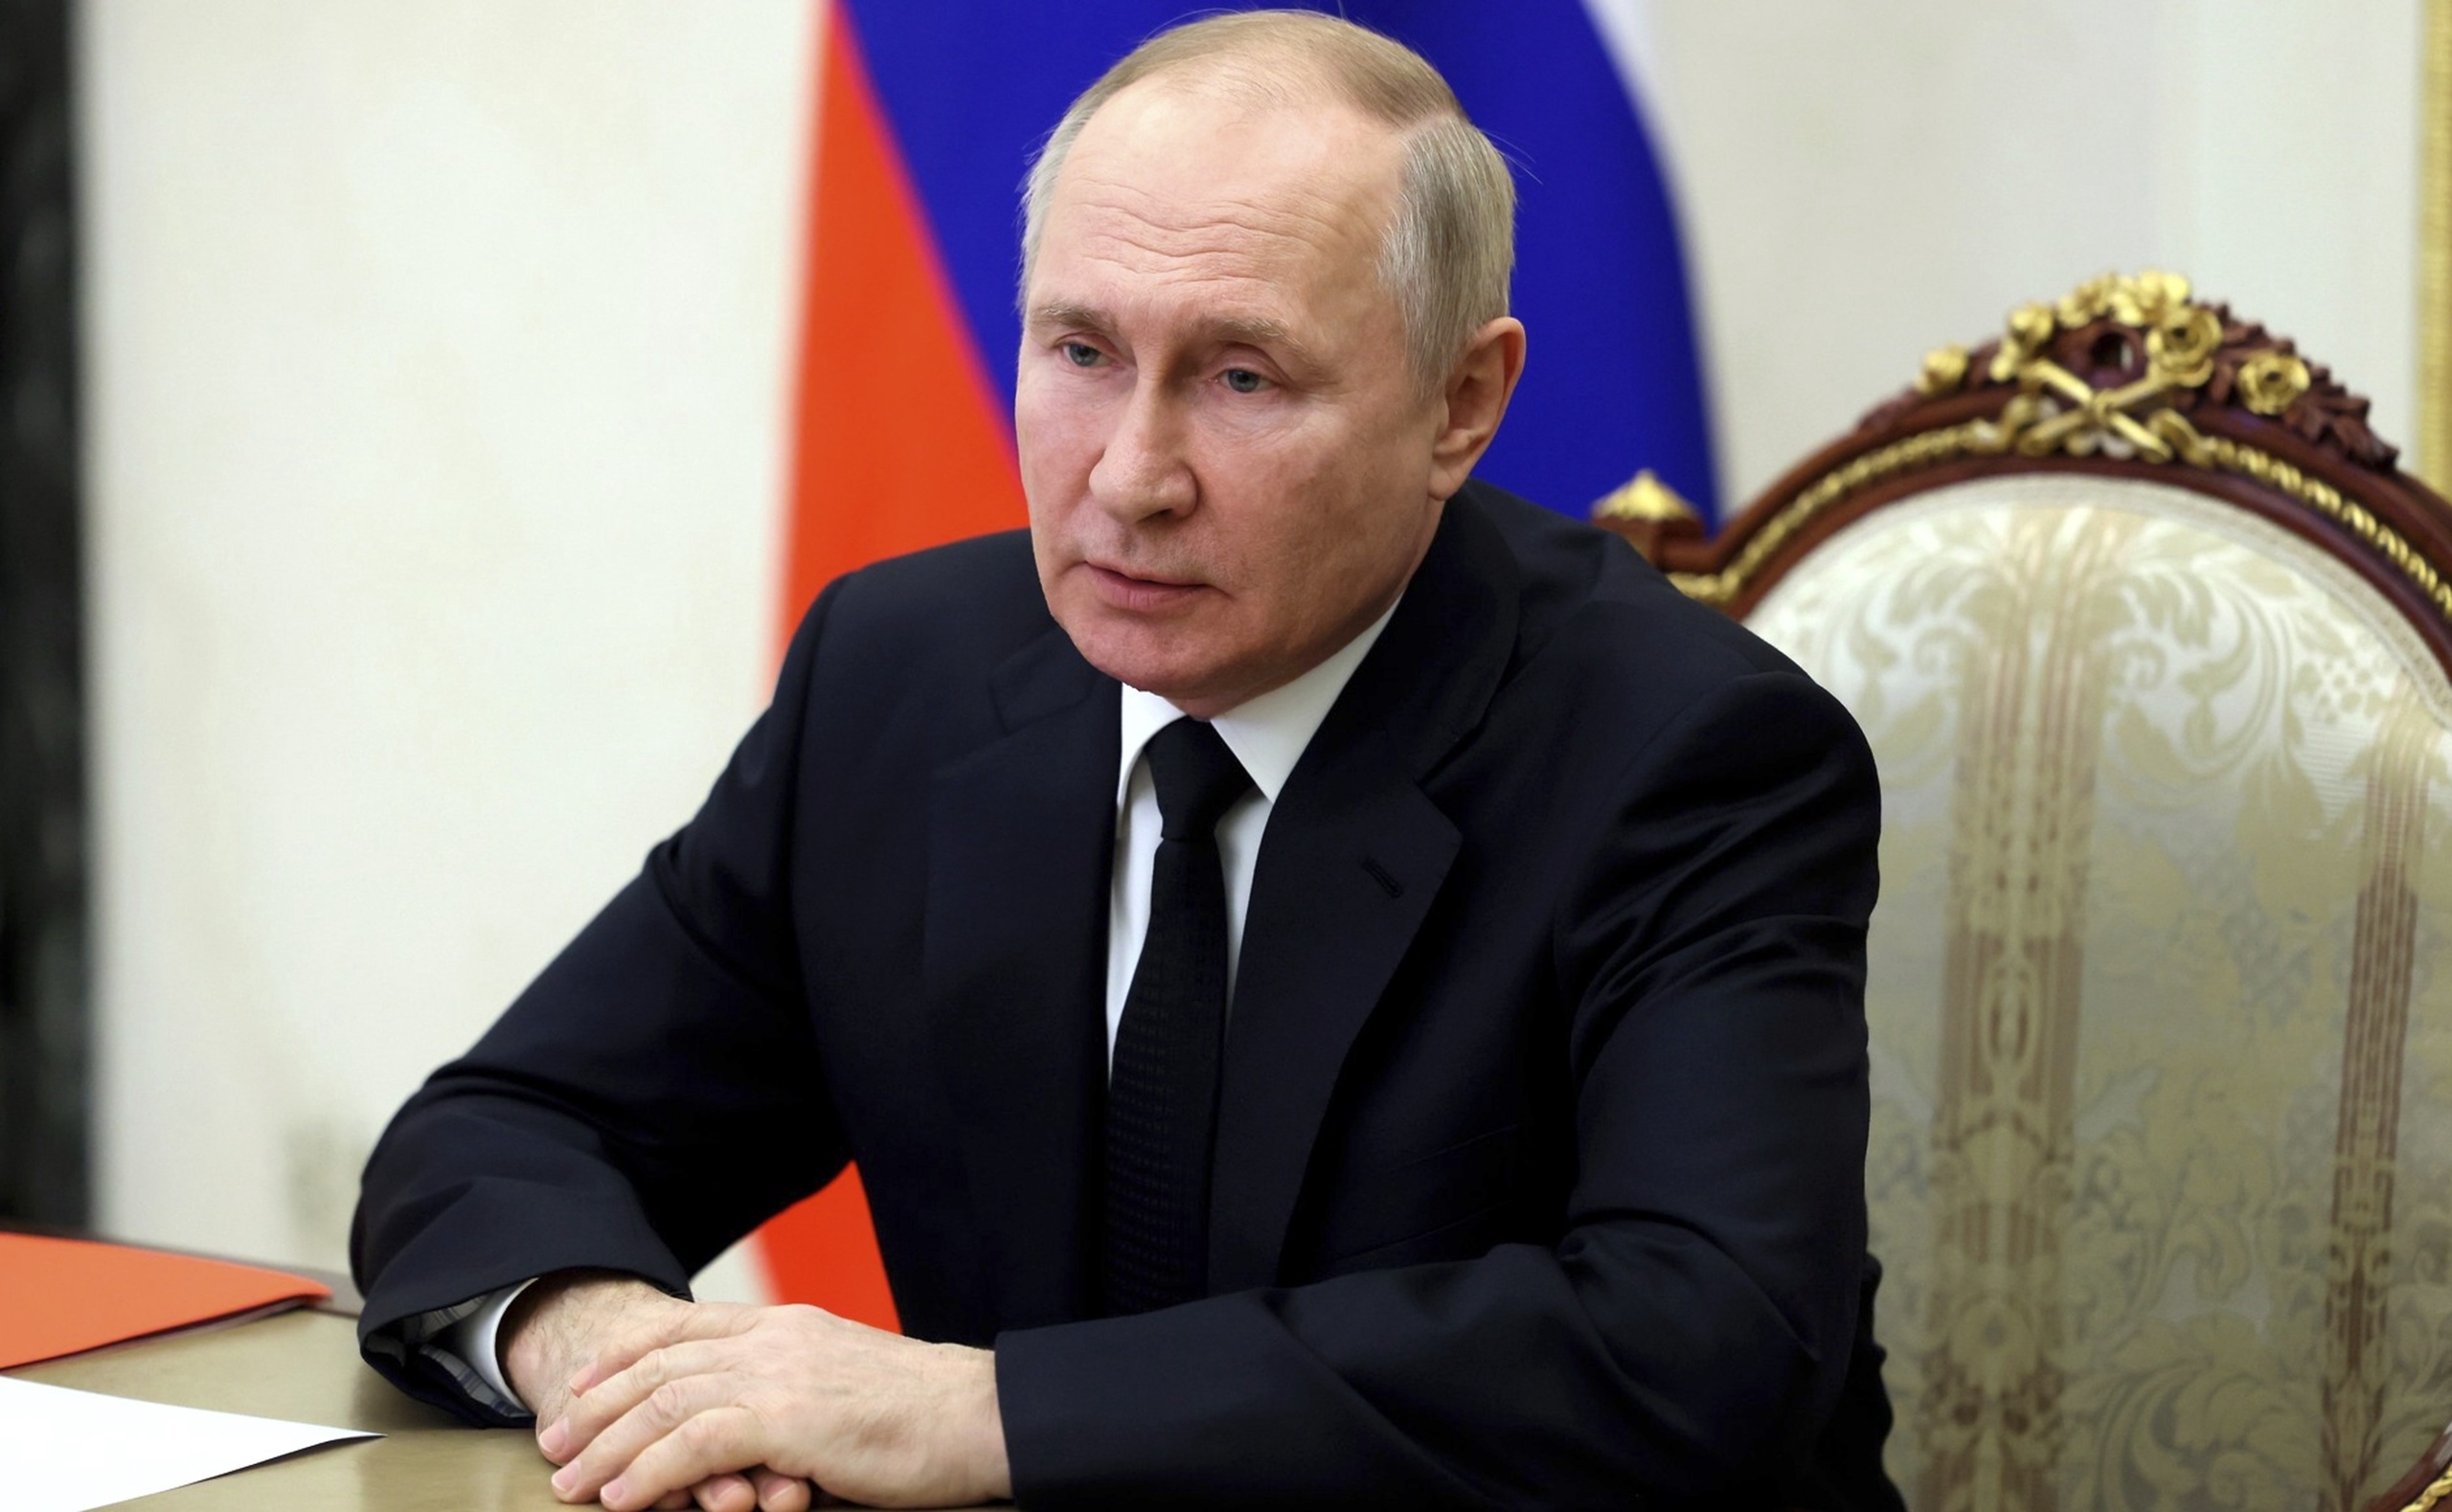 Moskou wil landen verbieden om Russische olie door te verkopen aan het westen. Daarnaast wil het juist de olieprijs voor landen die geen prijsplafond invoeren gaan verlagen.